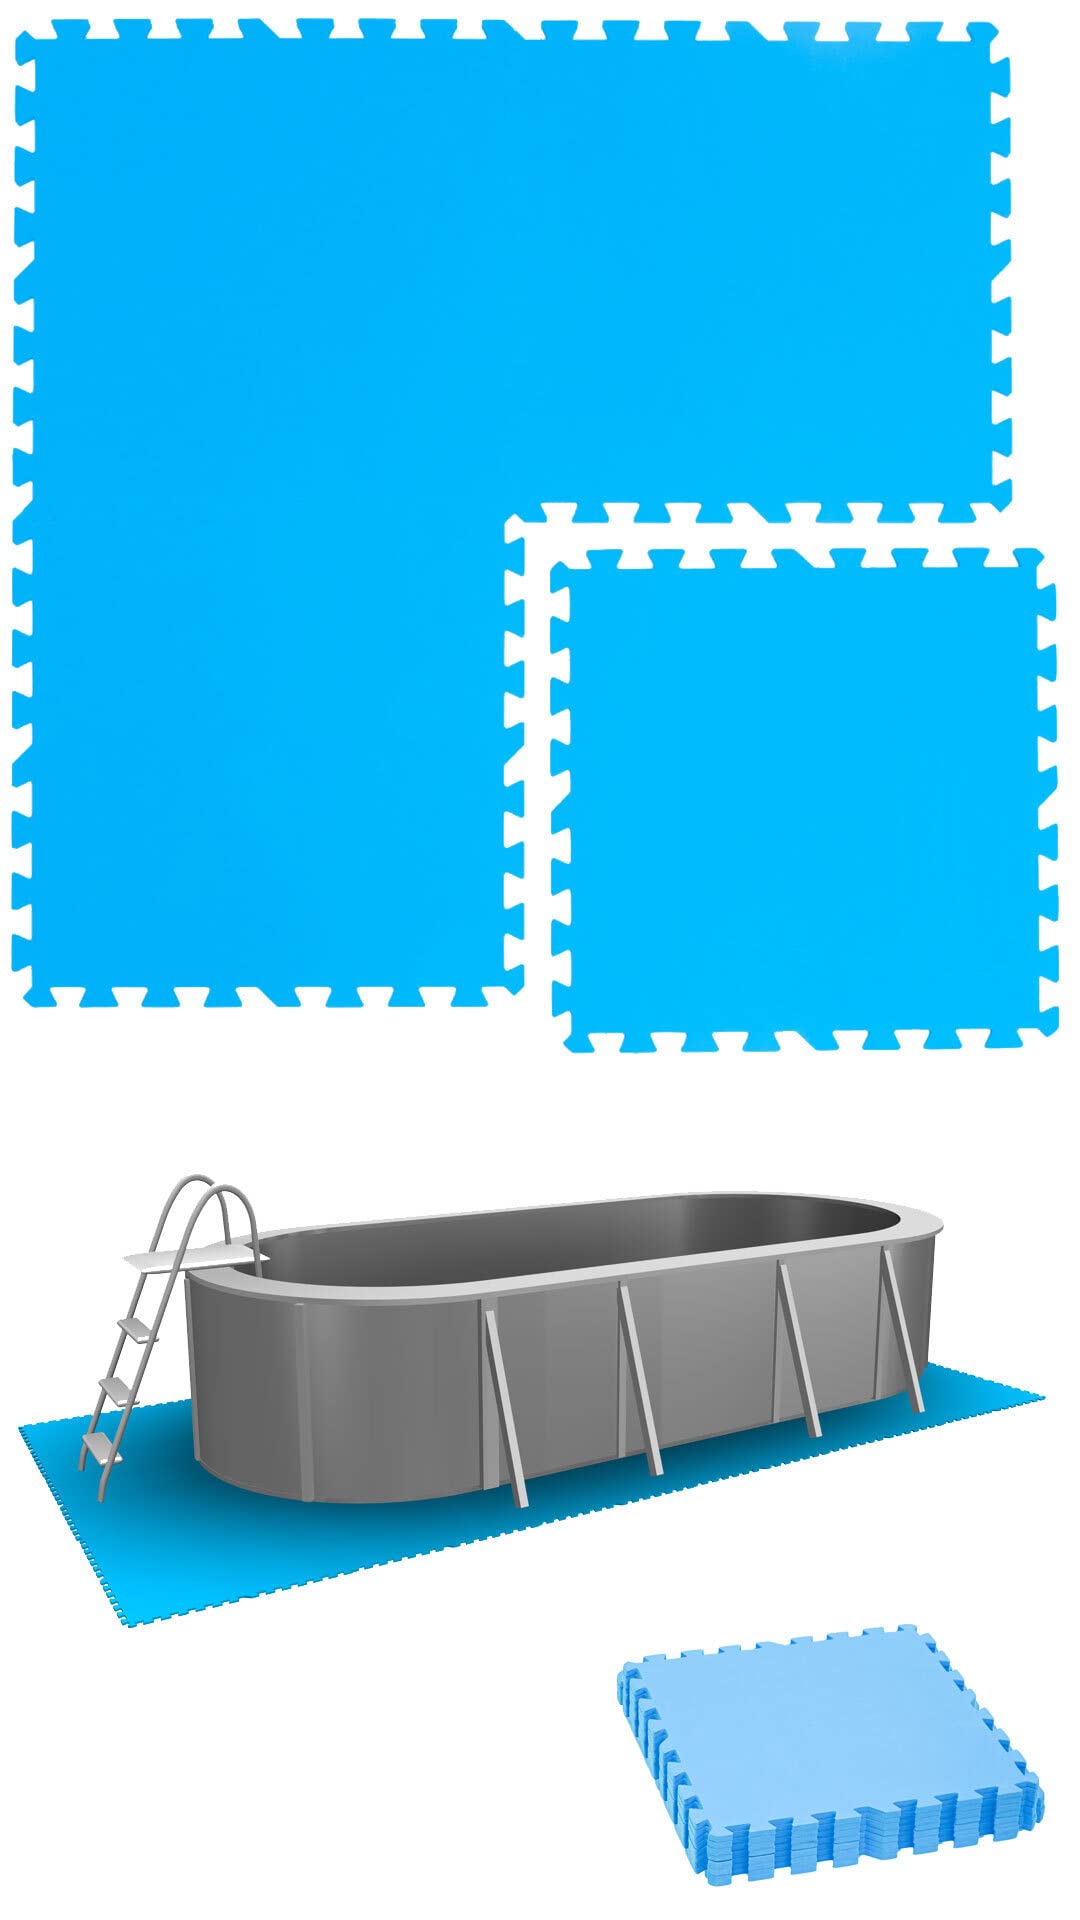 EYEPOWER 1,8m² Poolunterlage aus 8 großen Matten - 50 x 50 x 1cm Dicke Poolmatte - Pool Unterlage Outdoor Matte Poolunterlage 1cm Platten für Pool Boden Poolmatte Poolmatten Schutzboden 50x50